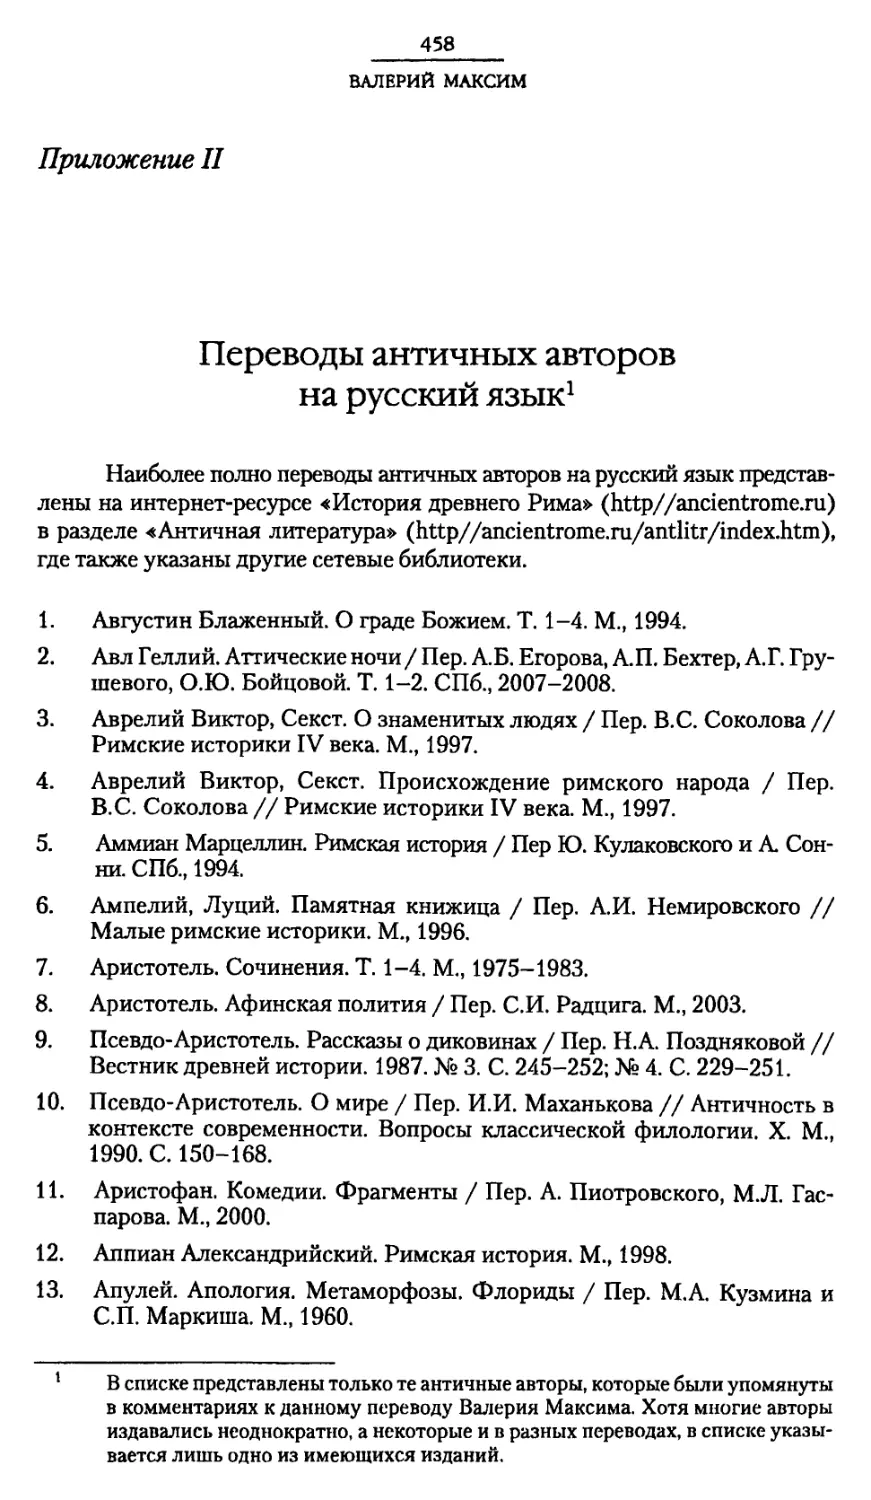 Приложение II. Переводы античных авторов на русский язык